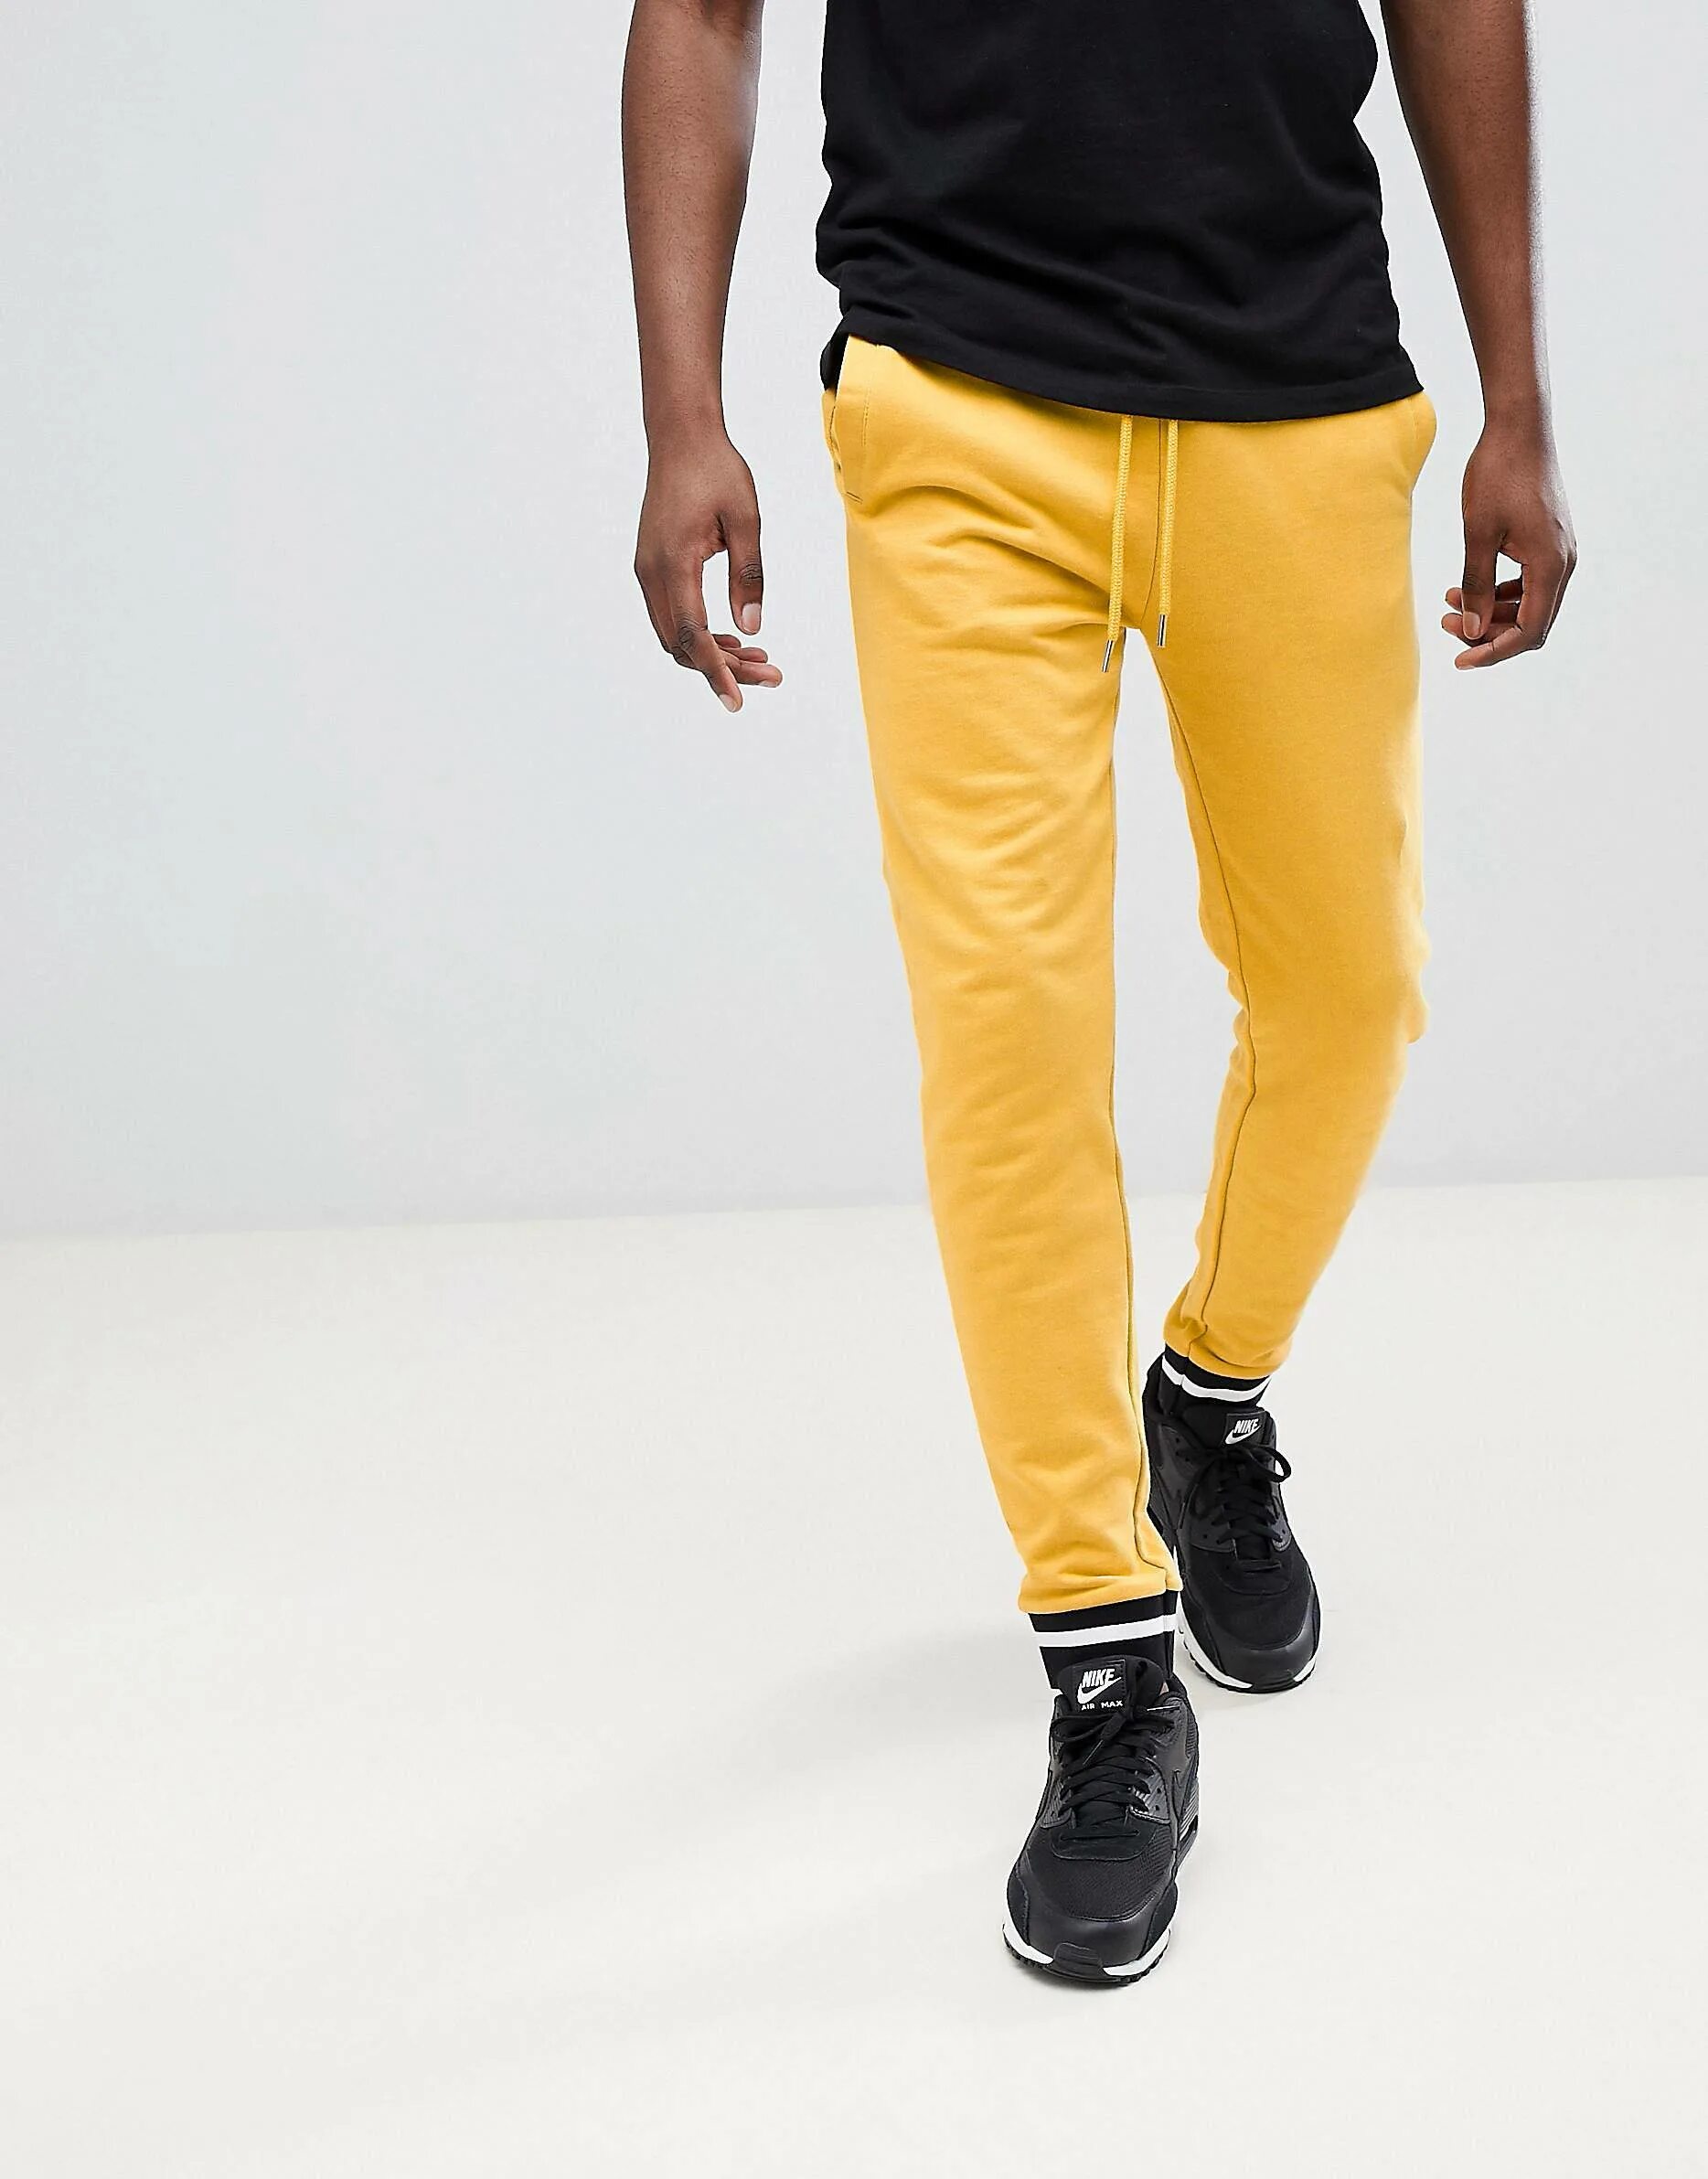 Штаны adidas Originals мужские жёлтые. Джоггеры ASOS Design мужские. Брюки мужские желтые ASOS. Джоггеры HM желтые.